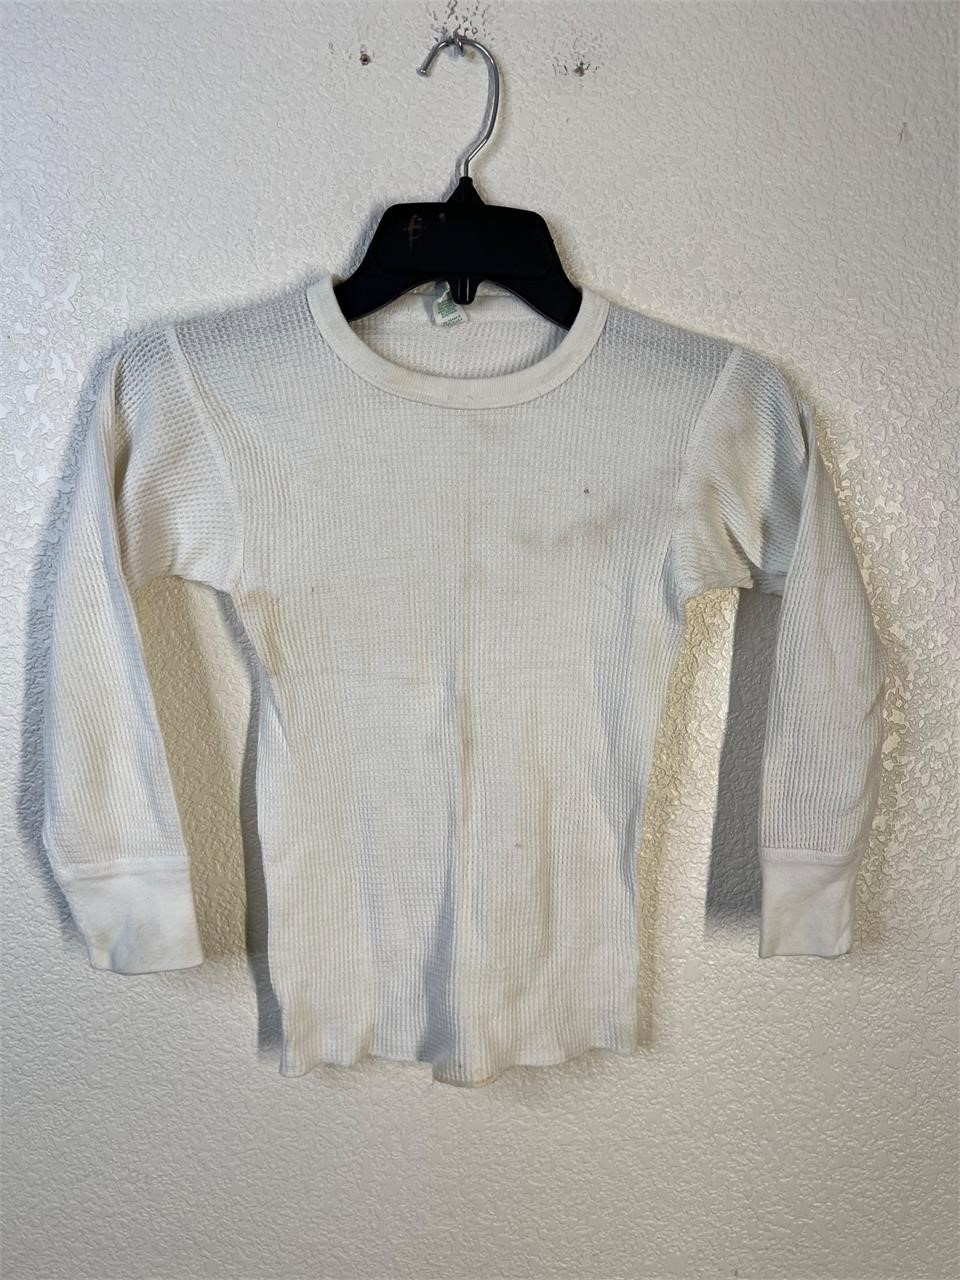 Vintage K-Mart Thermal Shirt